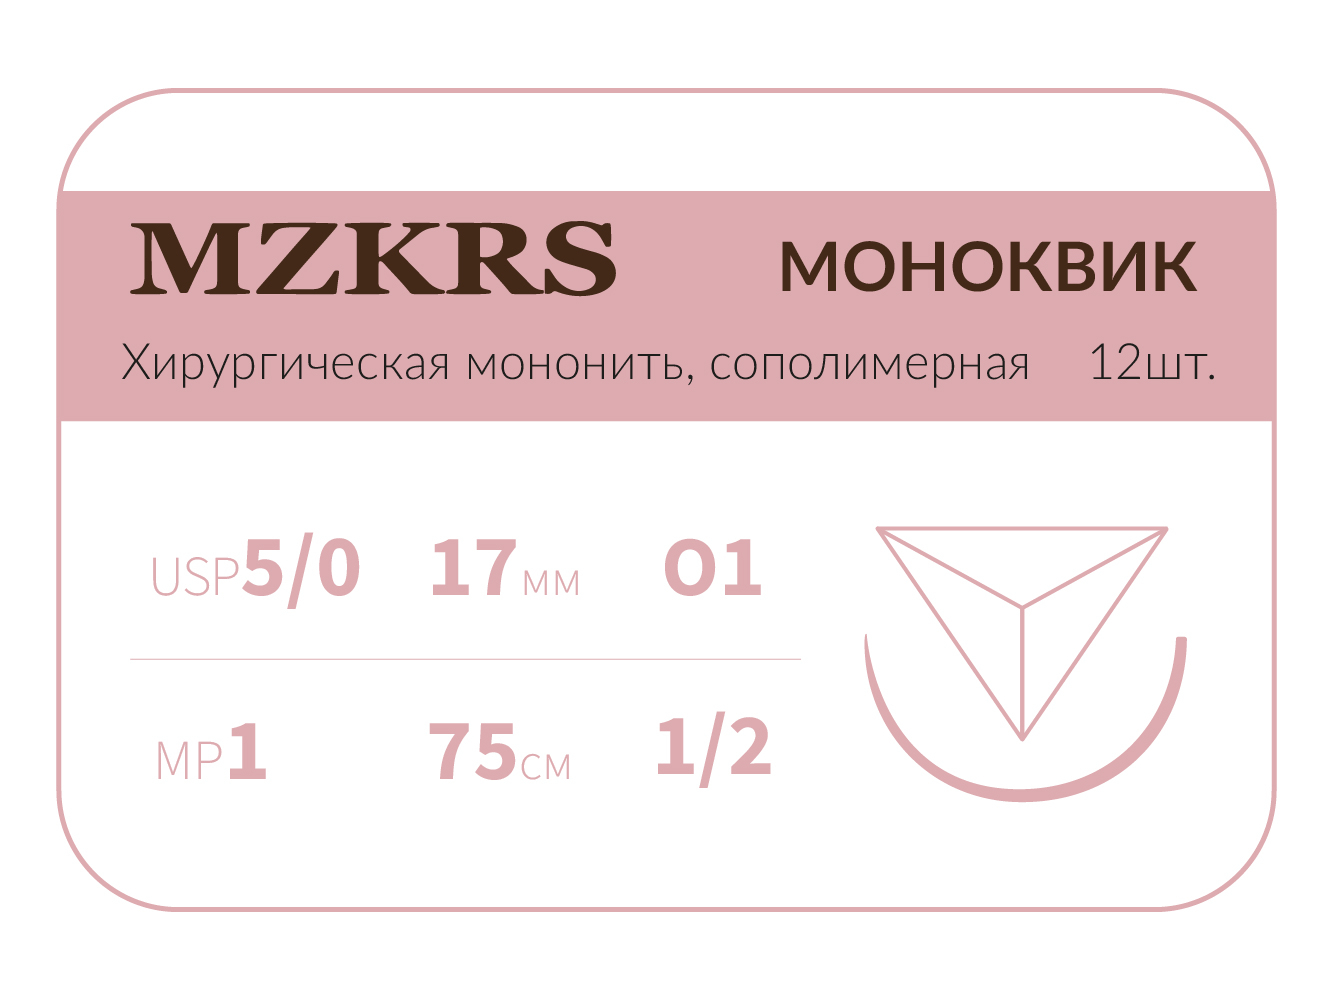 1712К1 Premium-5/0 (1)75  МОНК МОНОКВИК хирургическая мононить сополимерная, колющая игла, MZKRS (Россия)